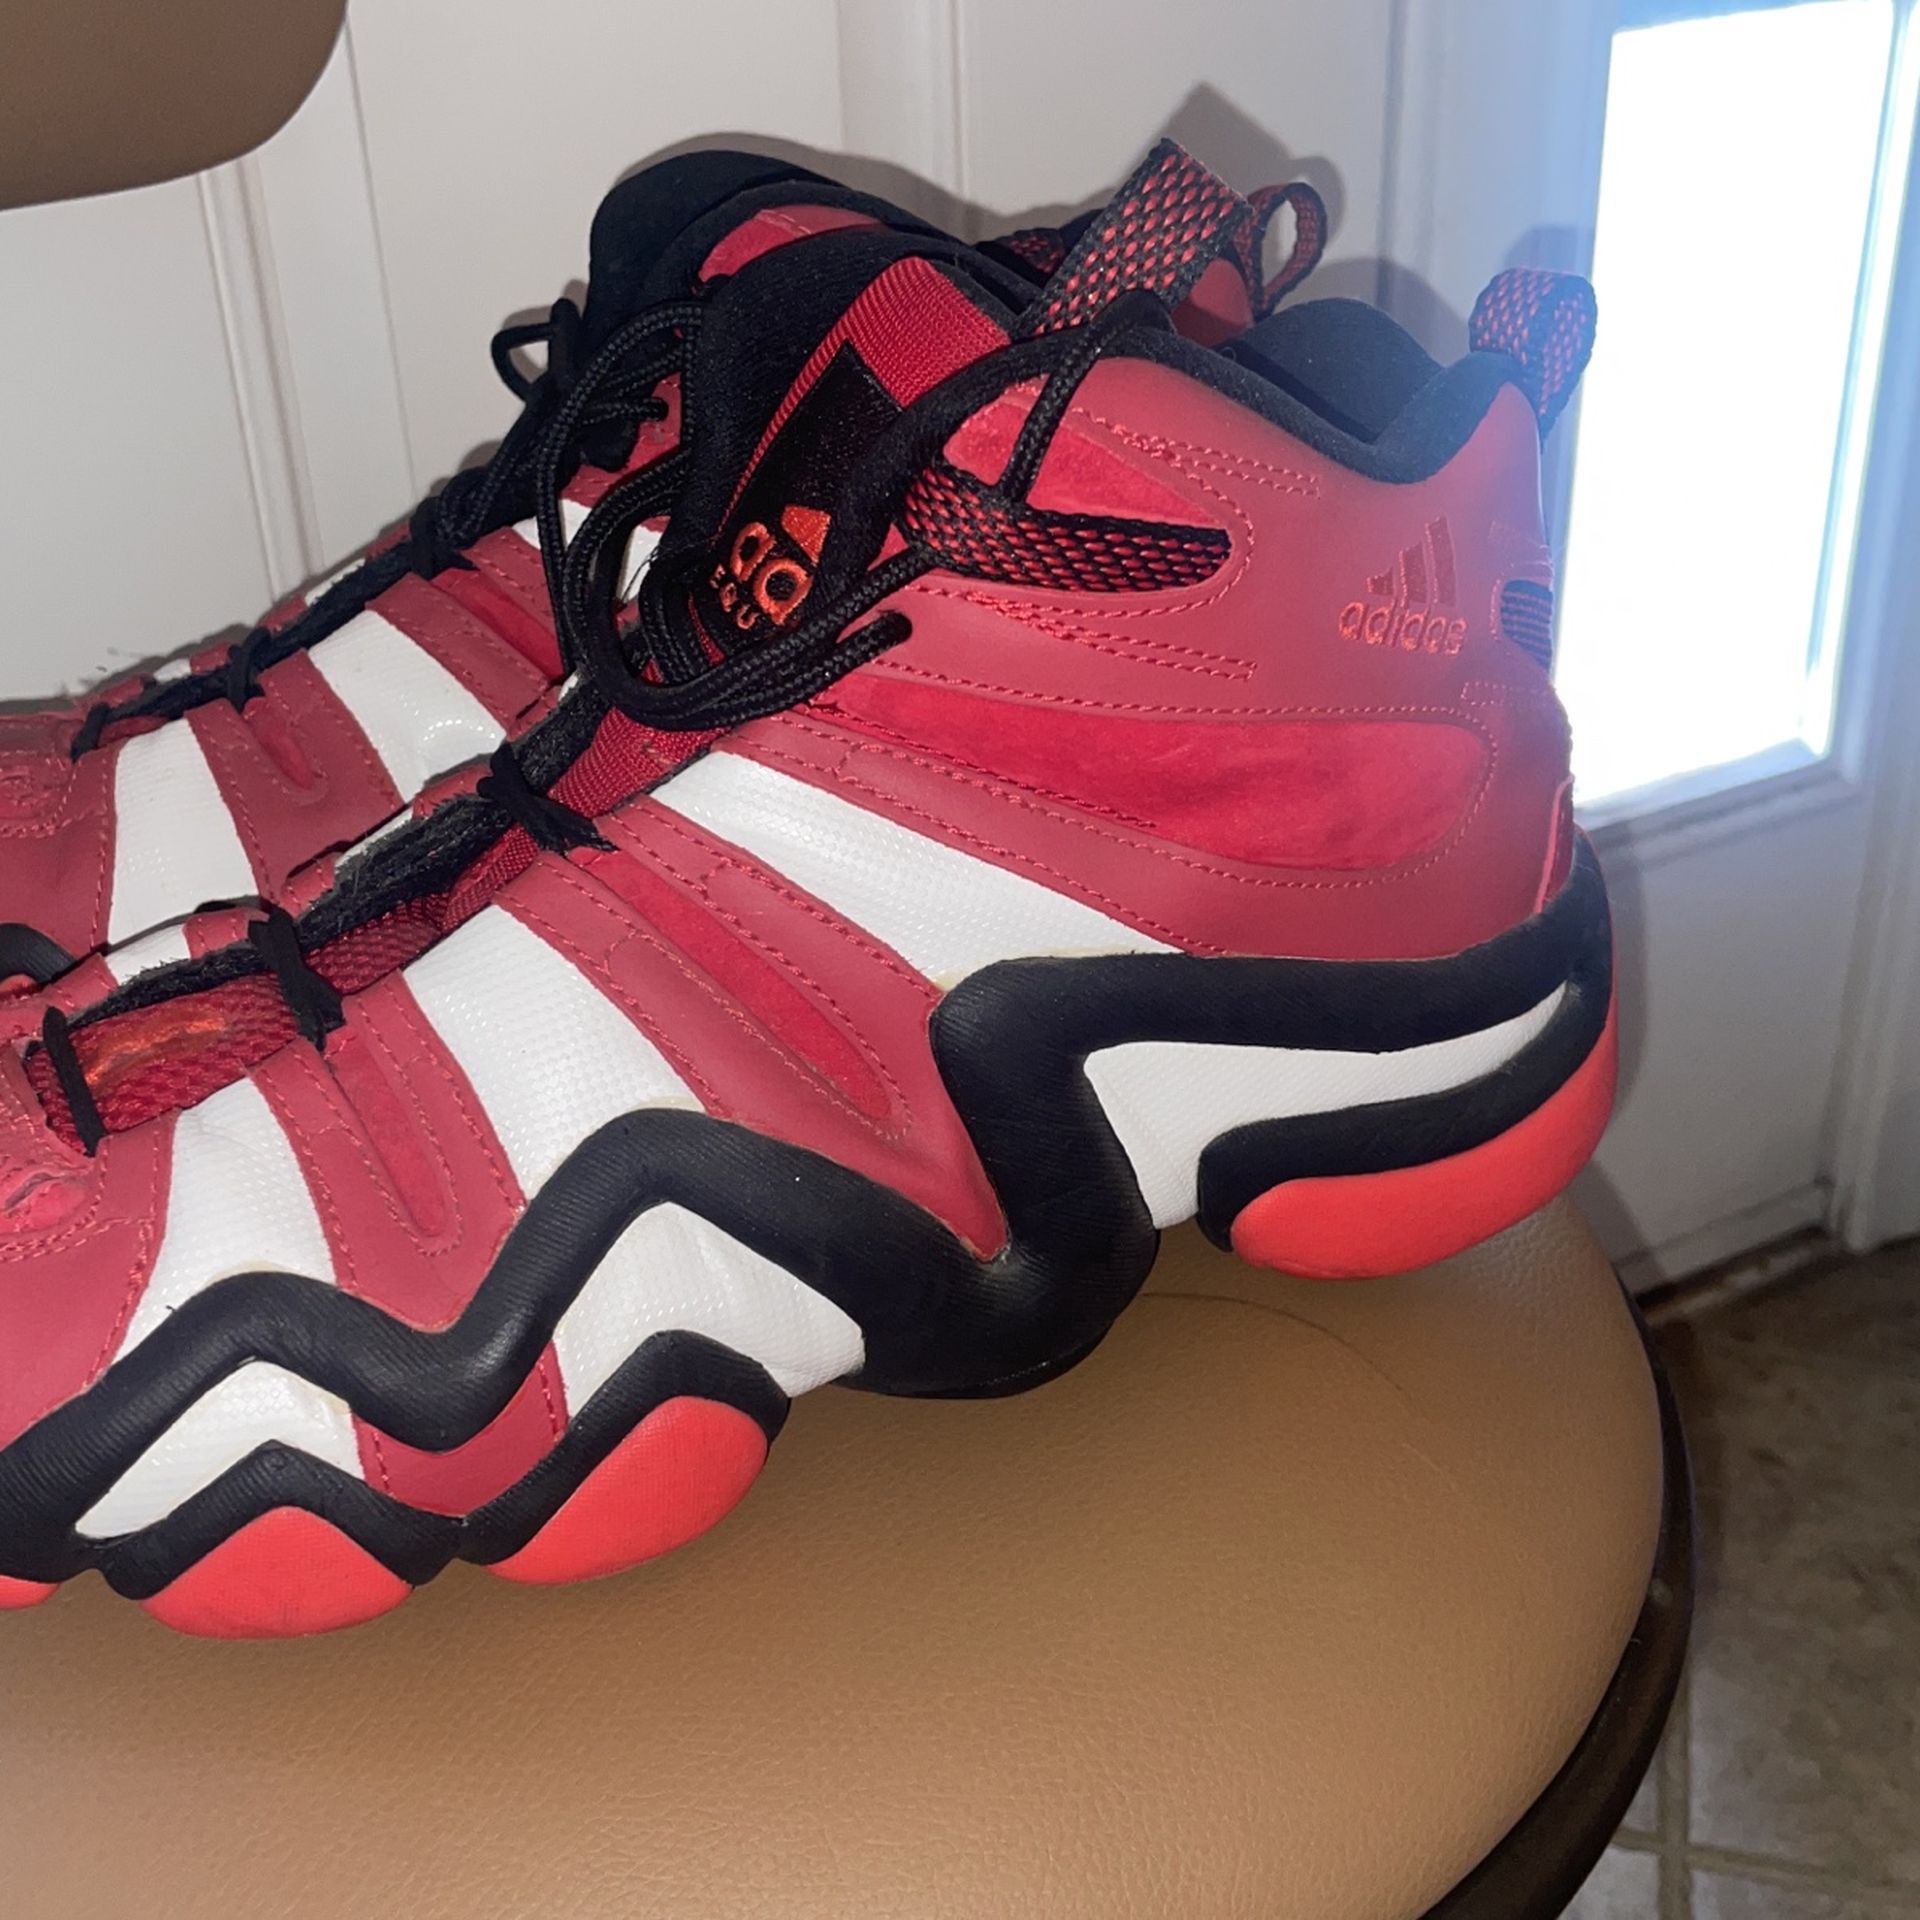 Adidas Crazy 8 Basketball Shoes 